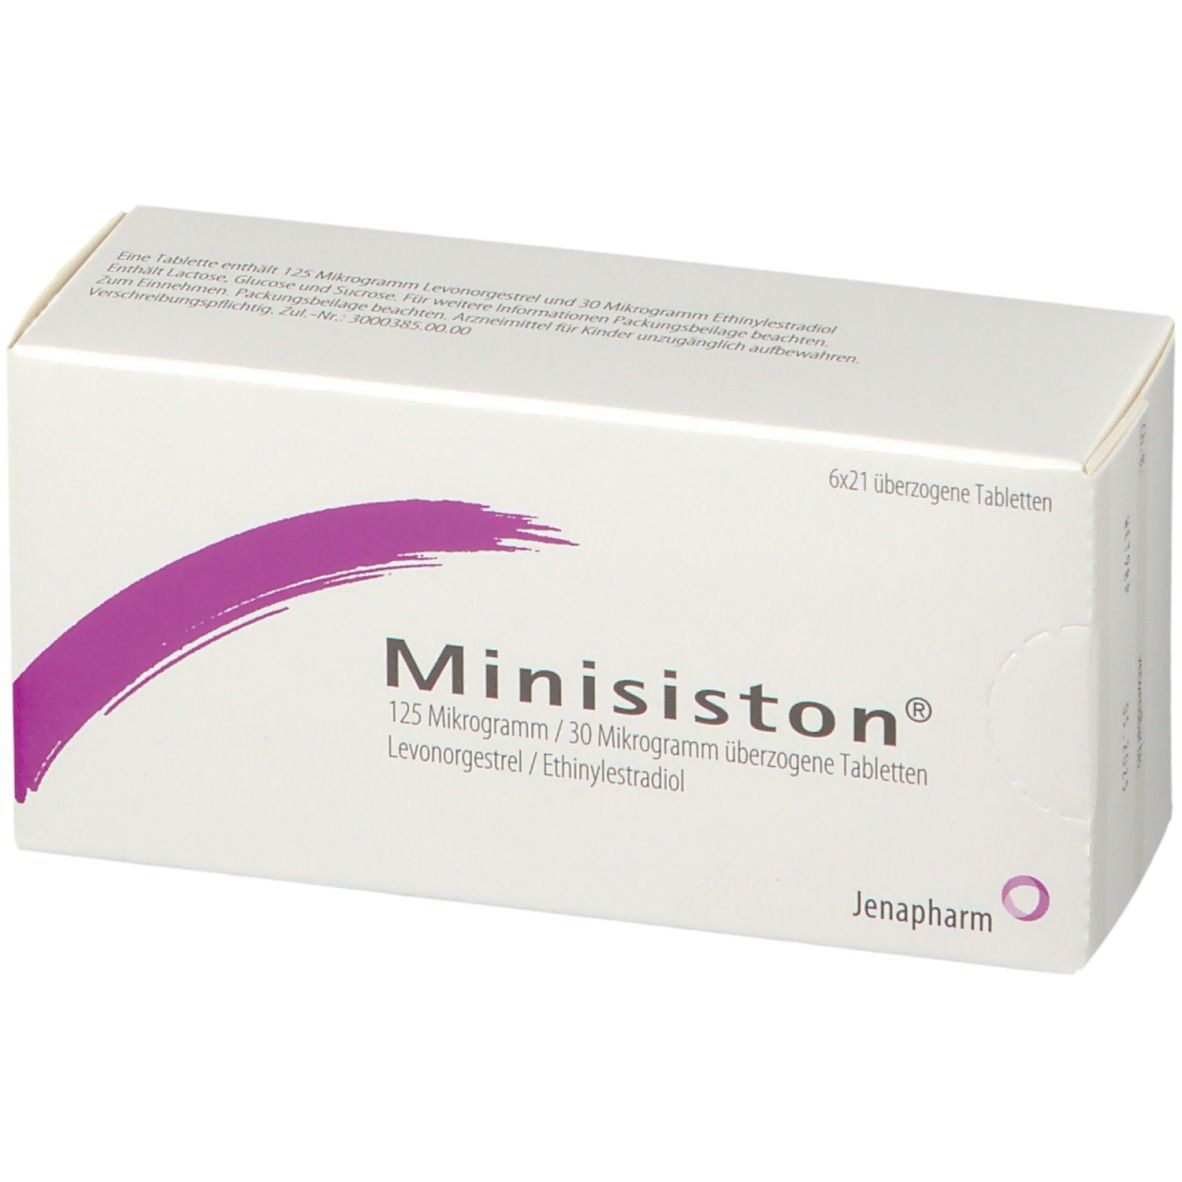 Minisiston® 125 µg/30 µg